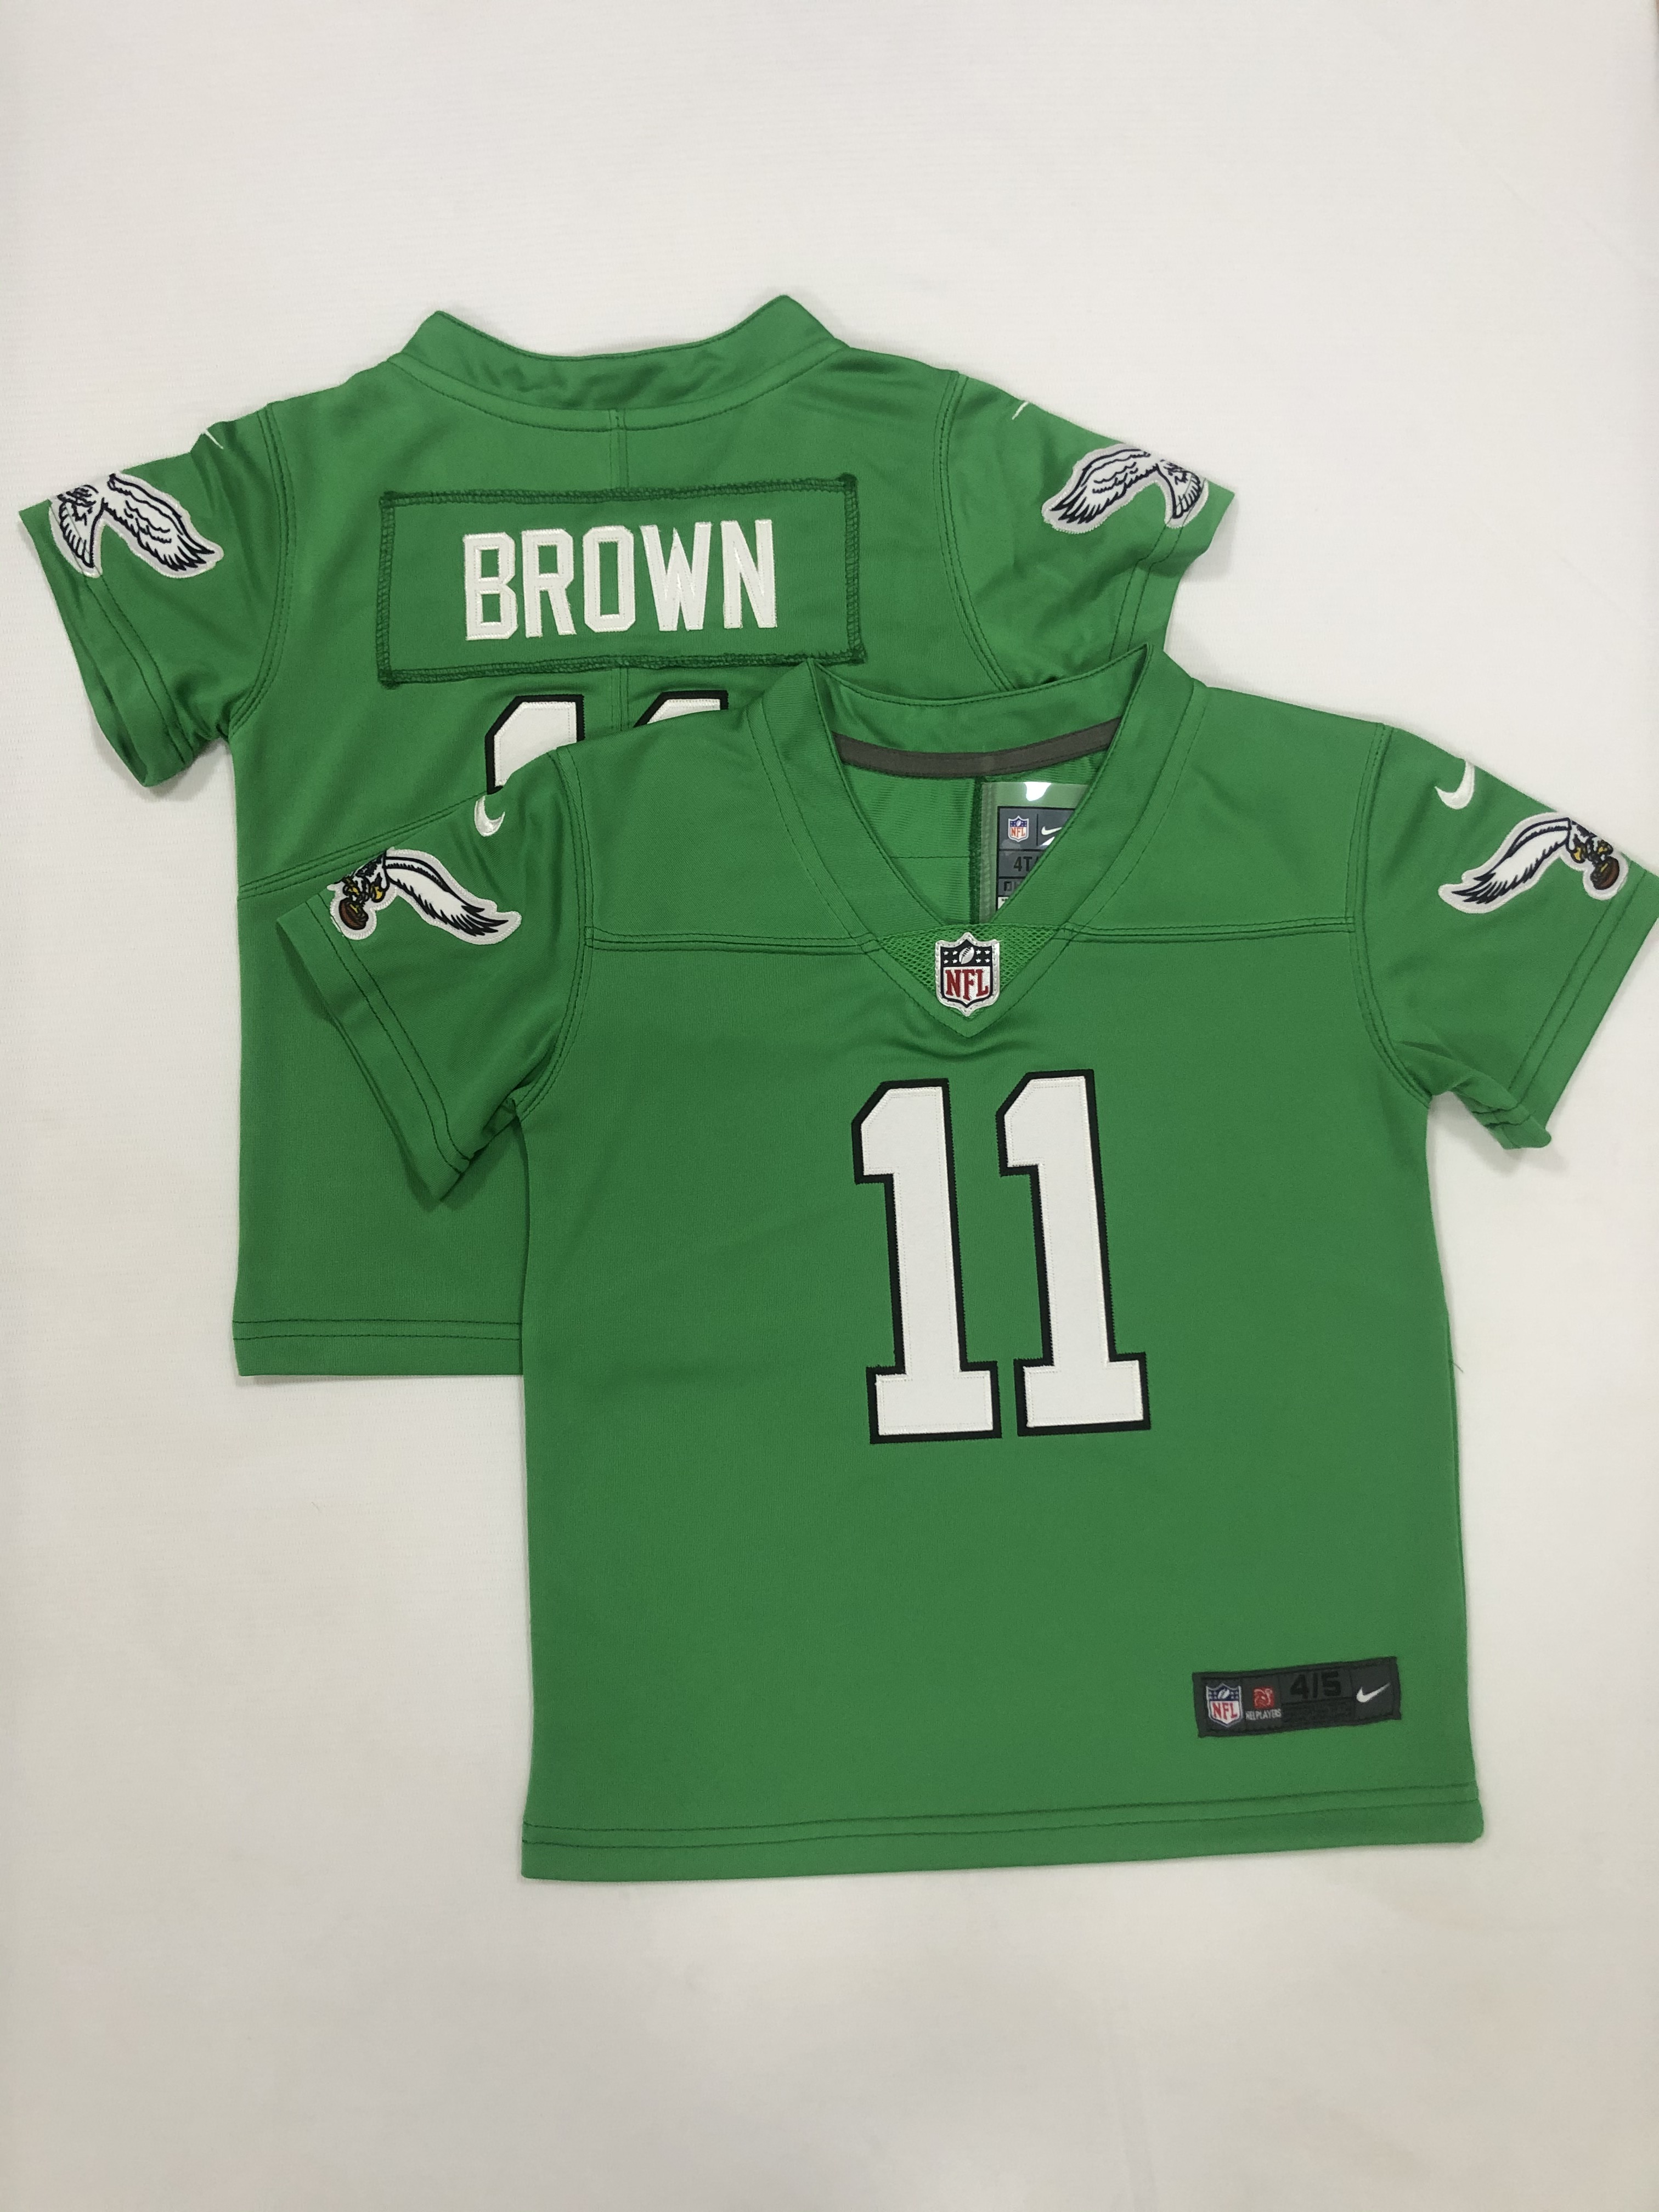 2023 Philadelphia Eagles #11 Brown Nike Green Alternate limited Toddler NFL Jersey->philadelphia eagles->NFL Jersey